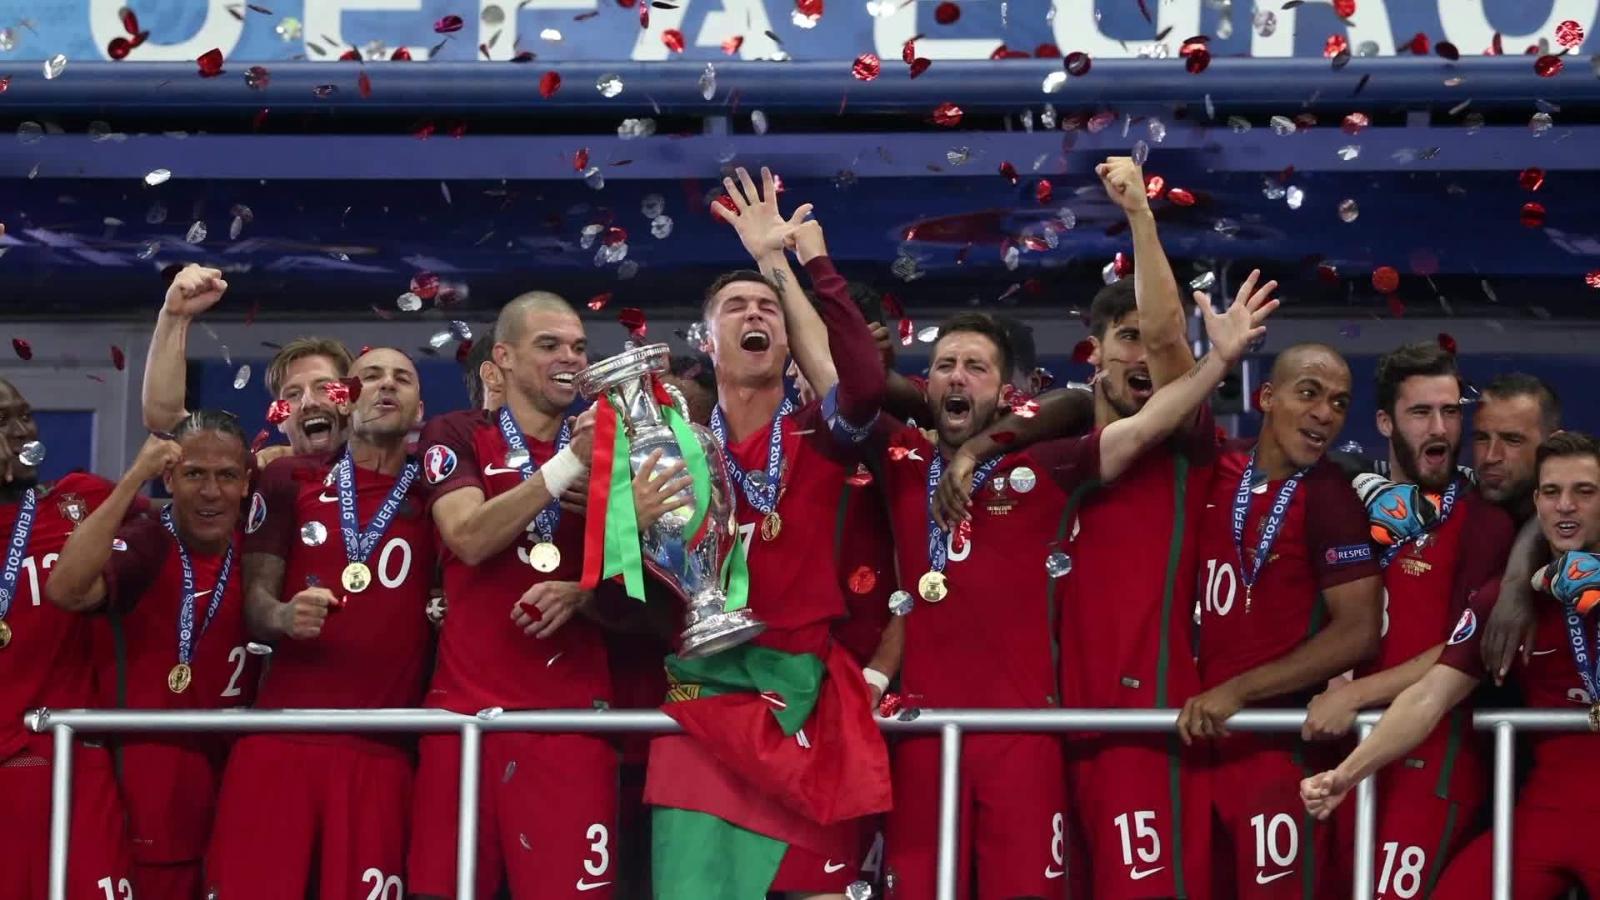 Peregrinación Decoración Nuez Así es la selección de Portugal en Rusia 2018 | Video | CNN